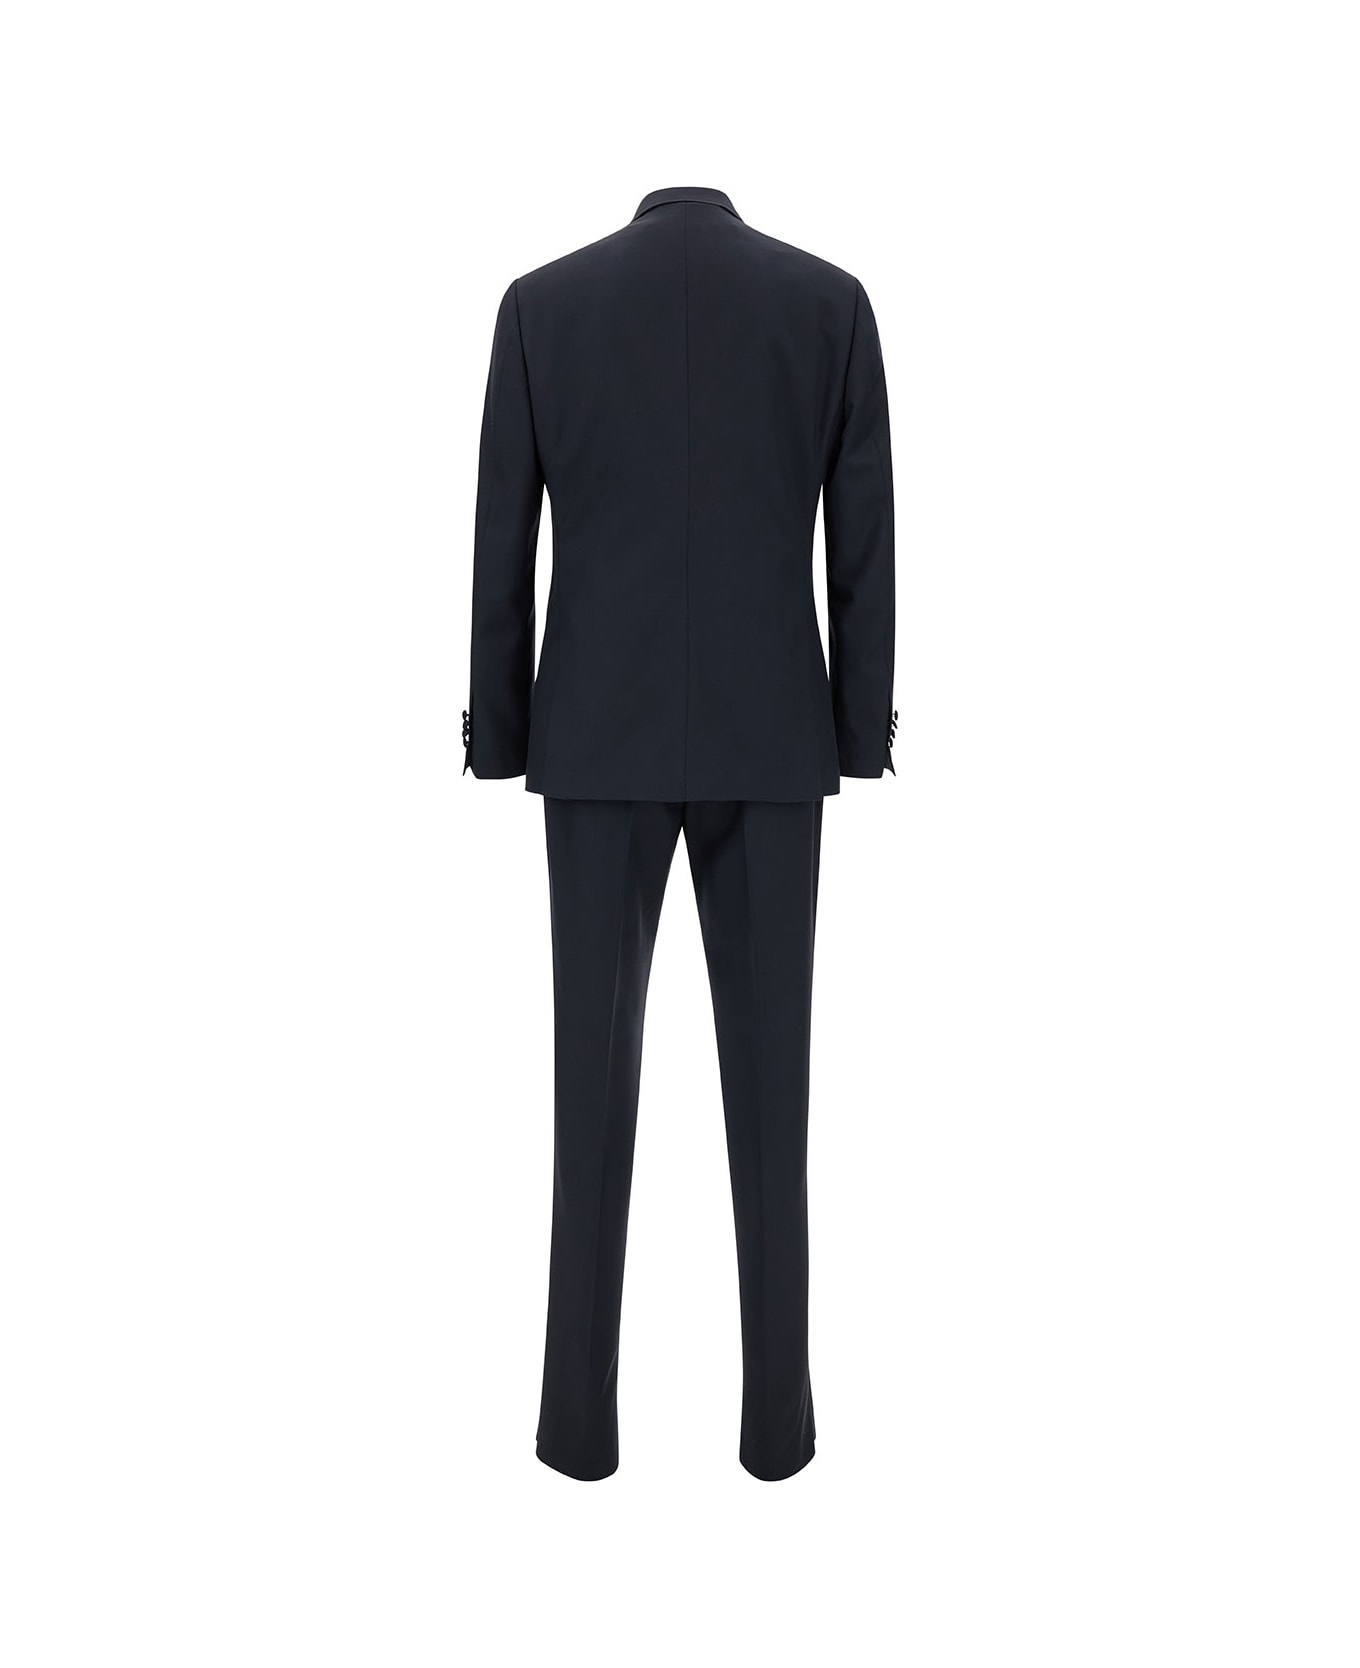 Lardini Blue Single-breasted Suit With Peak Revers In Wool Man - Blu